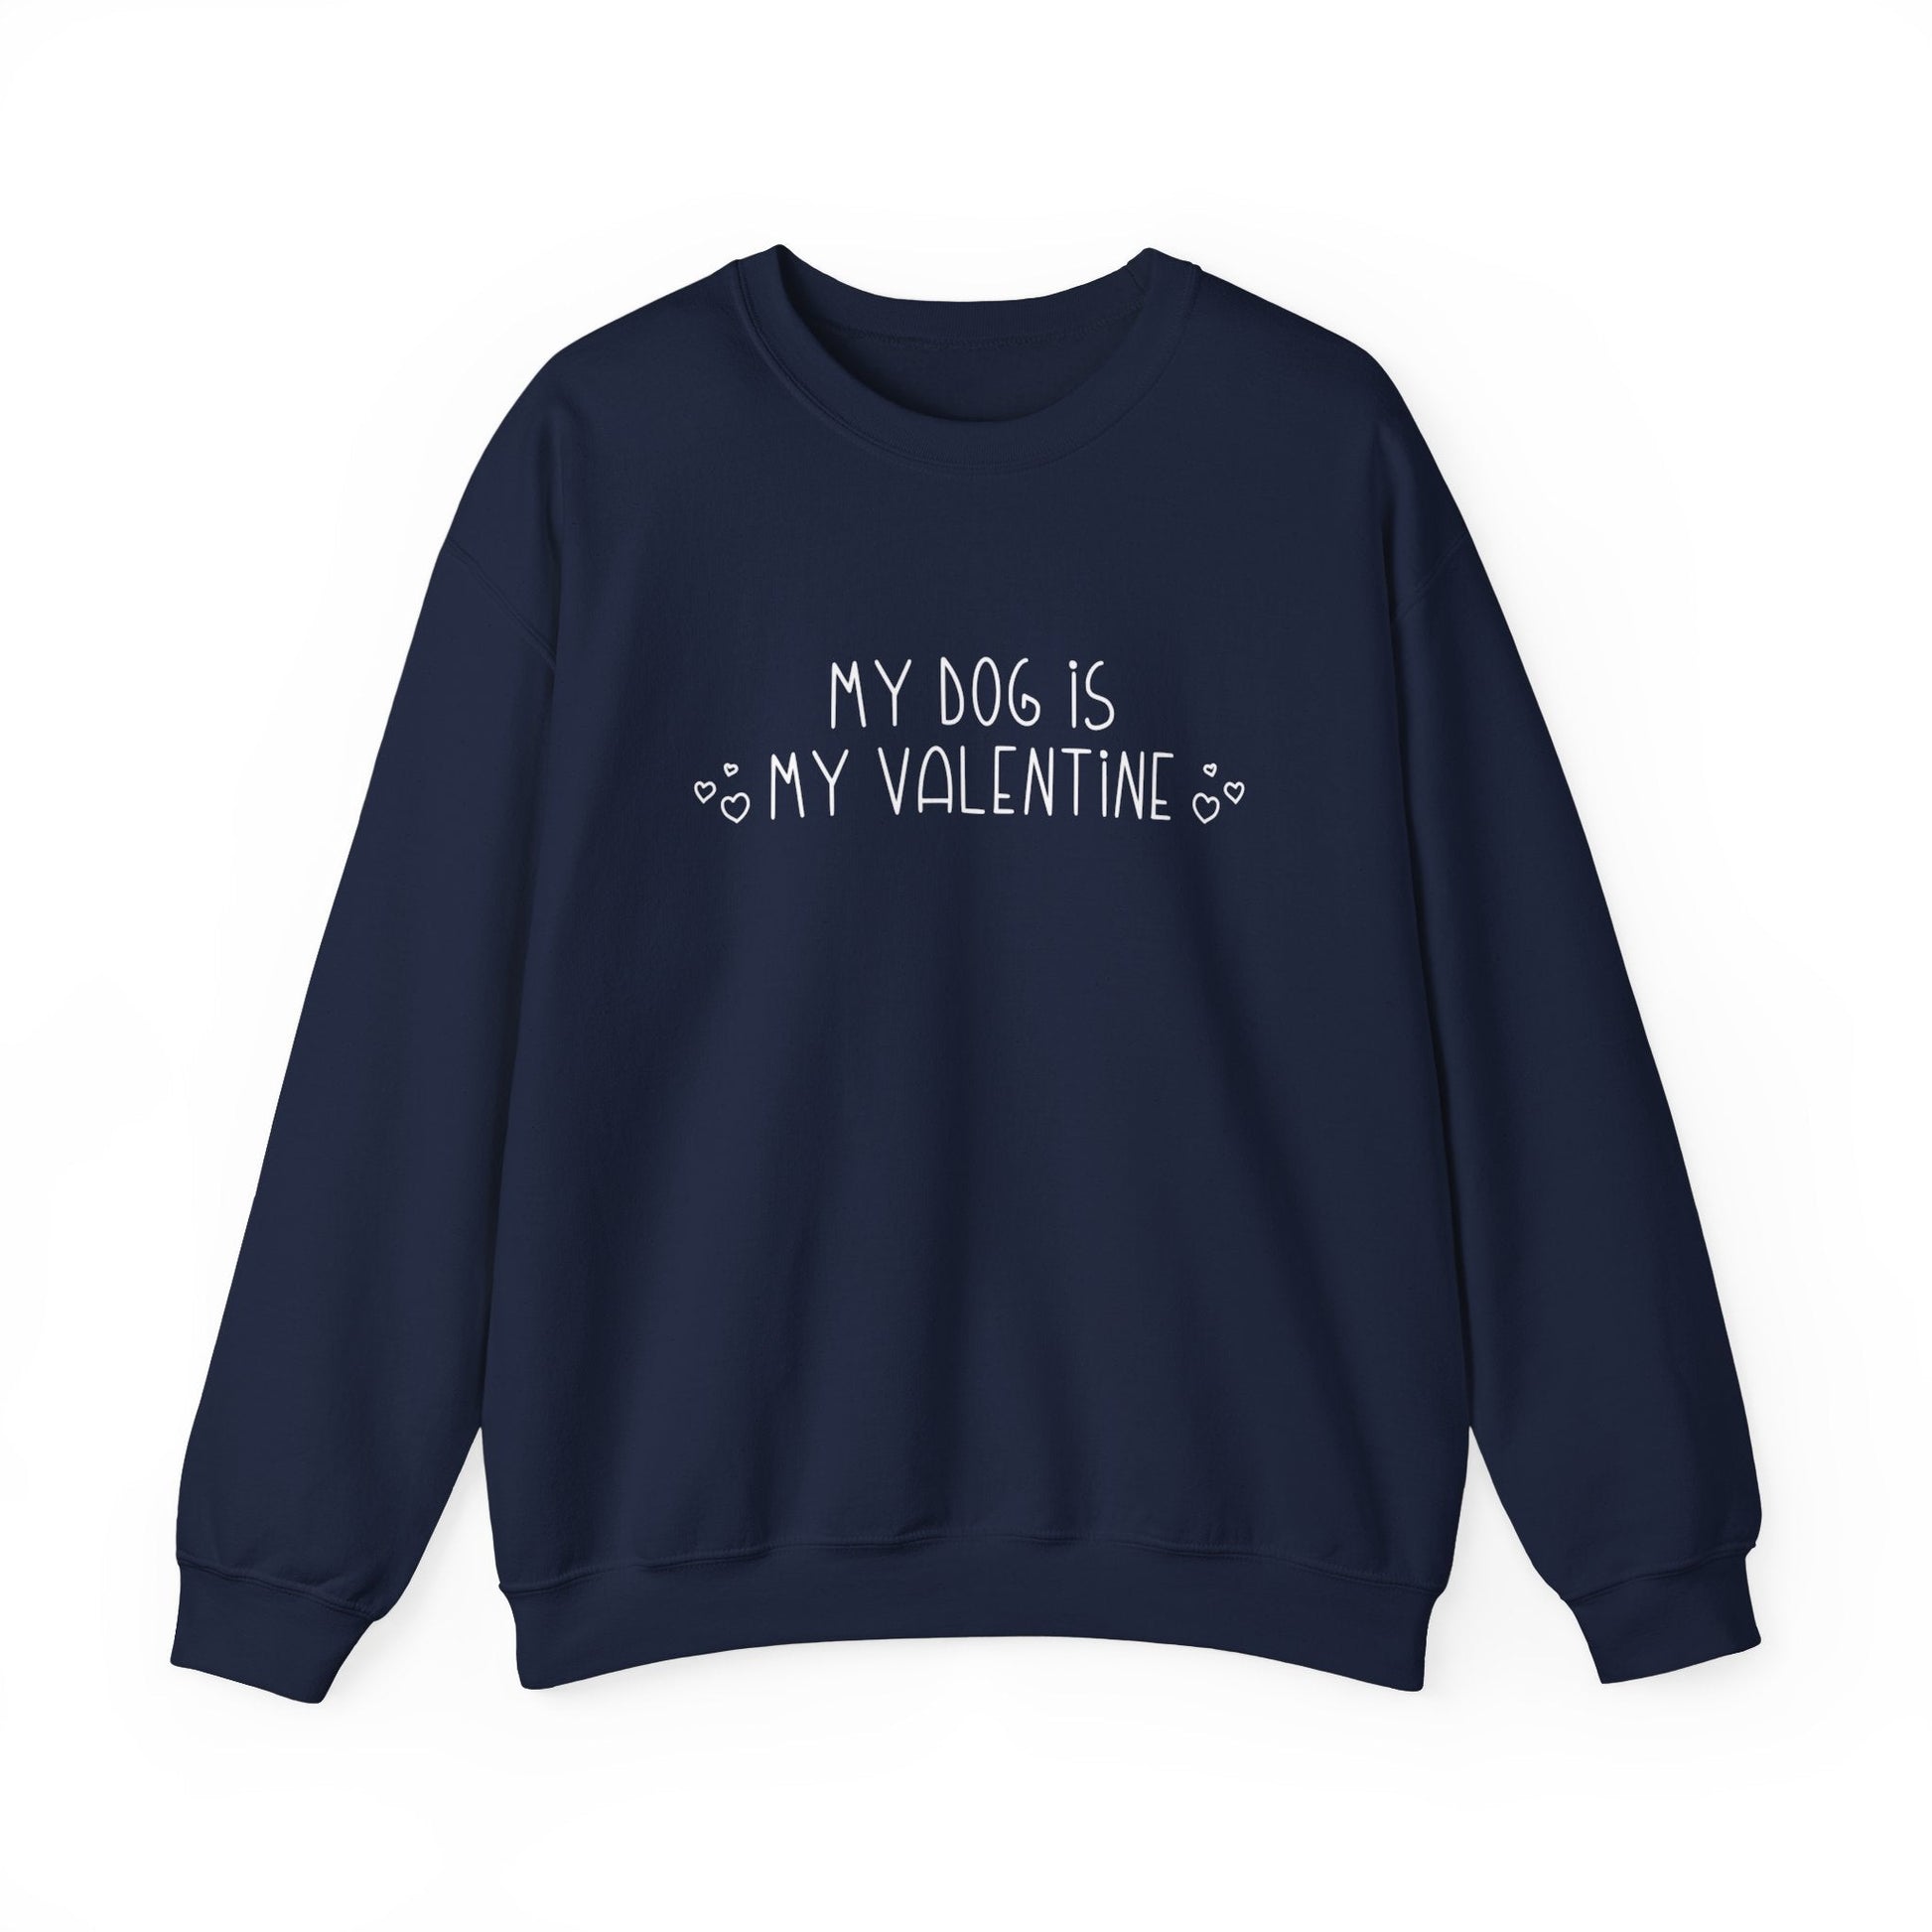 My Dog Is My Valentine | Crewneck Sweatshirt - Detezi Designs-32717405192432386777